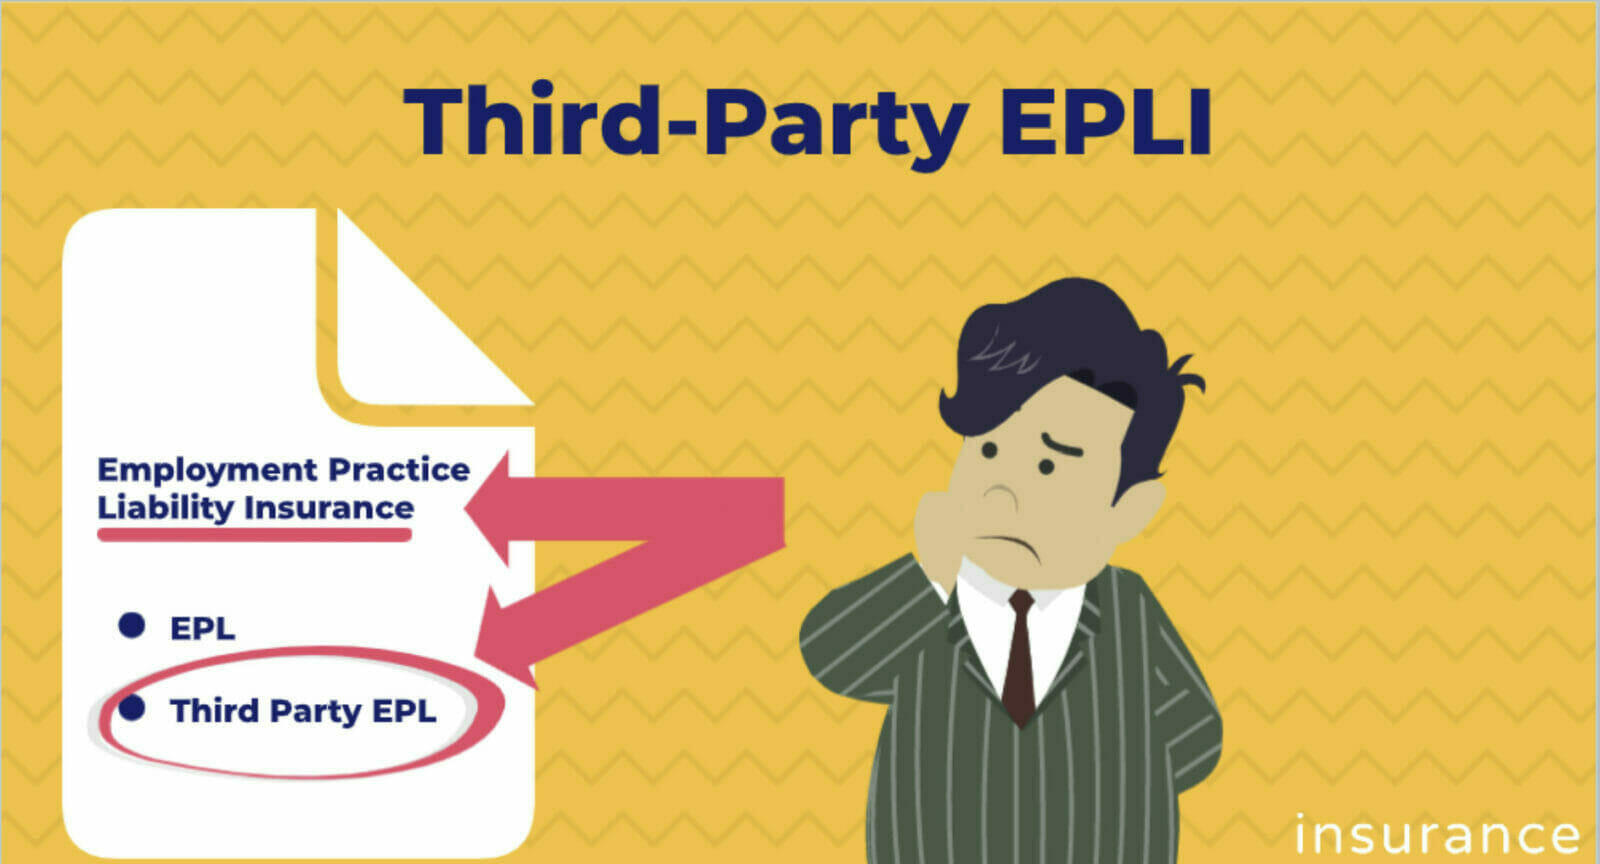 Third-Party EPLI